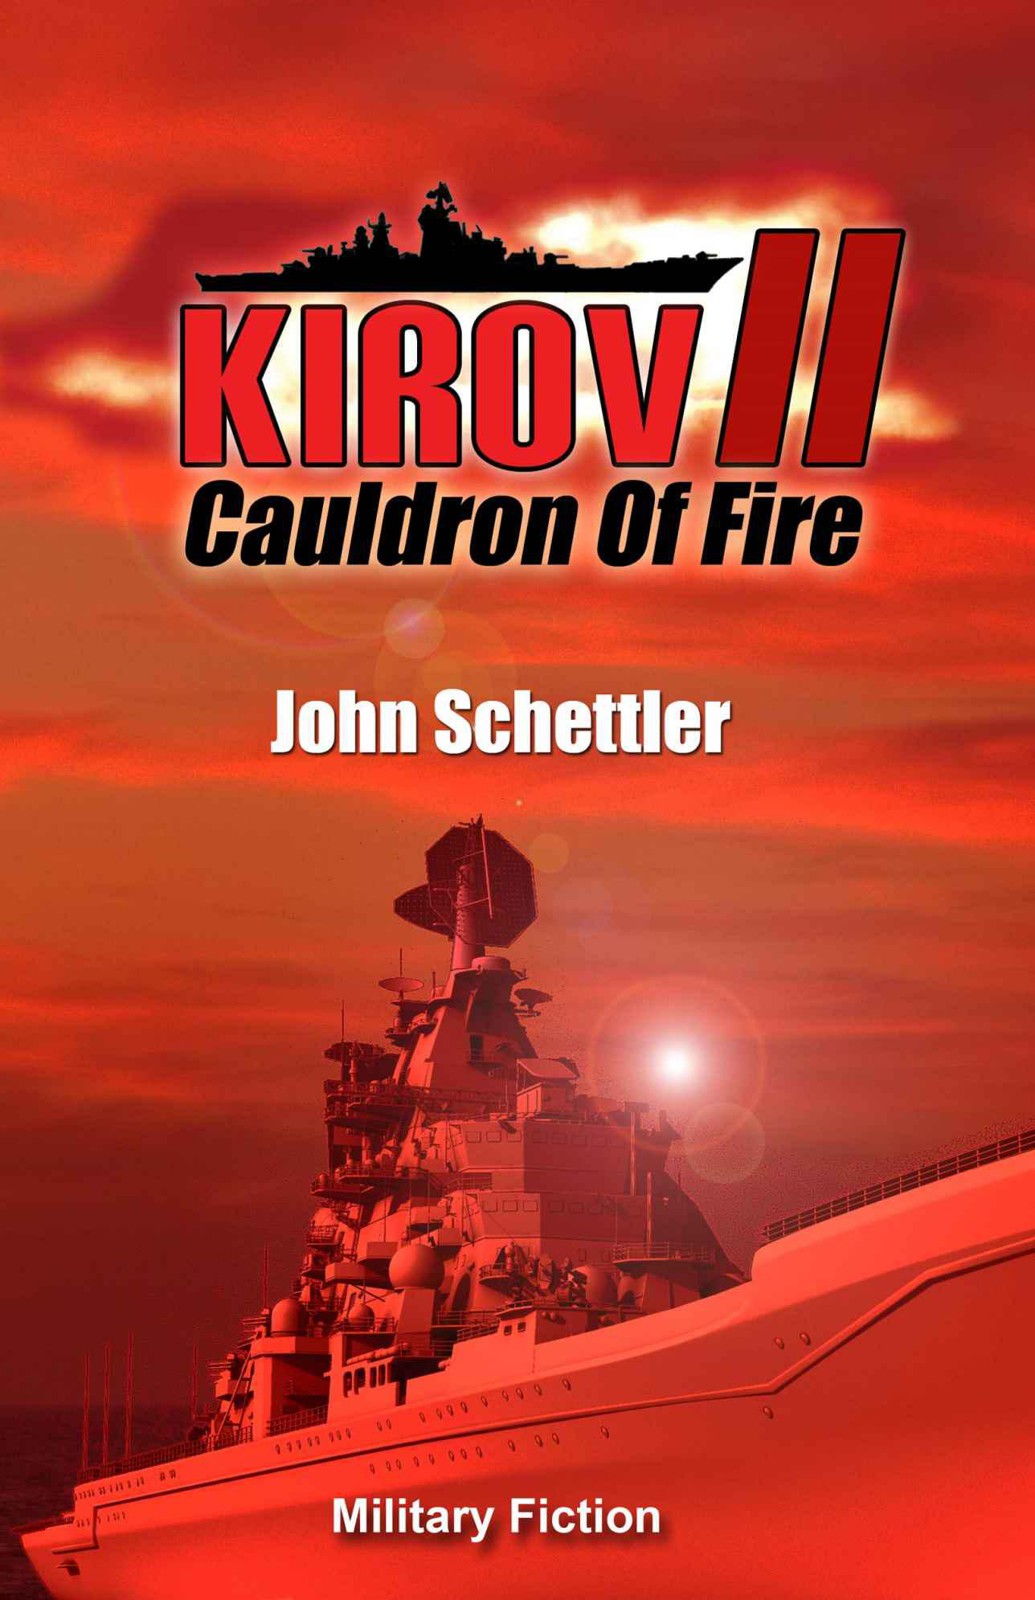 John Schettler: Cauldron of Fire